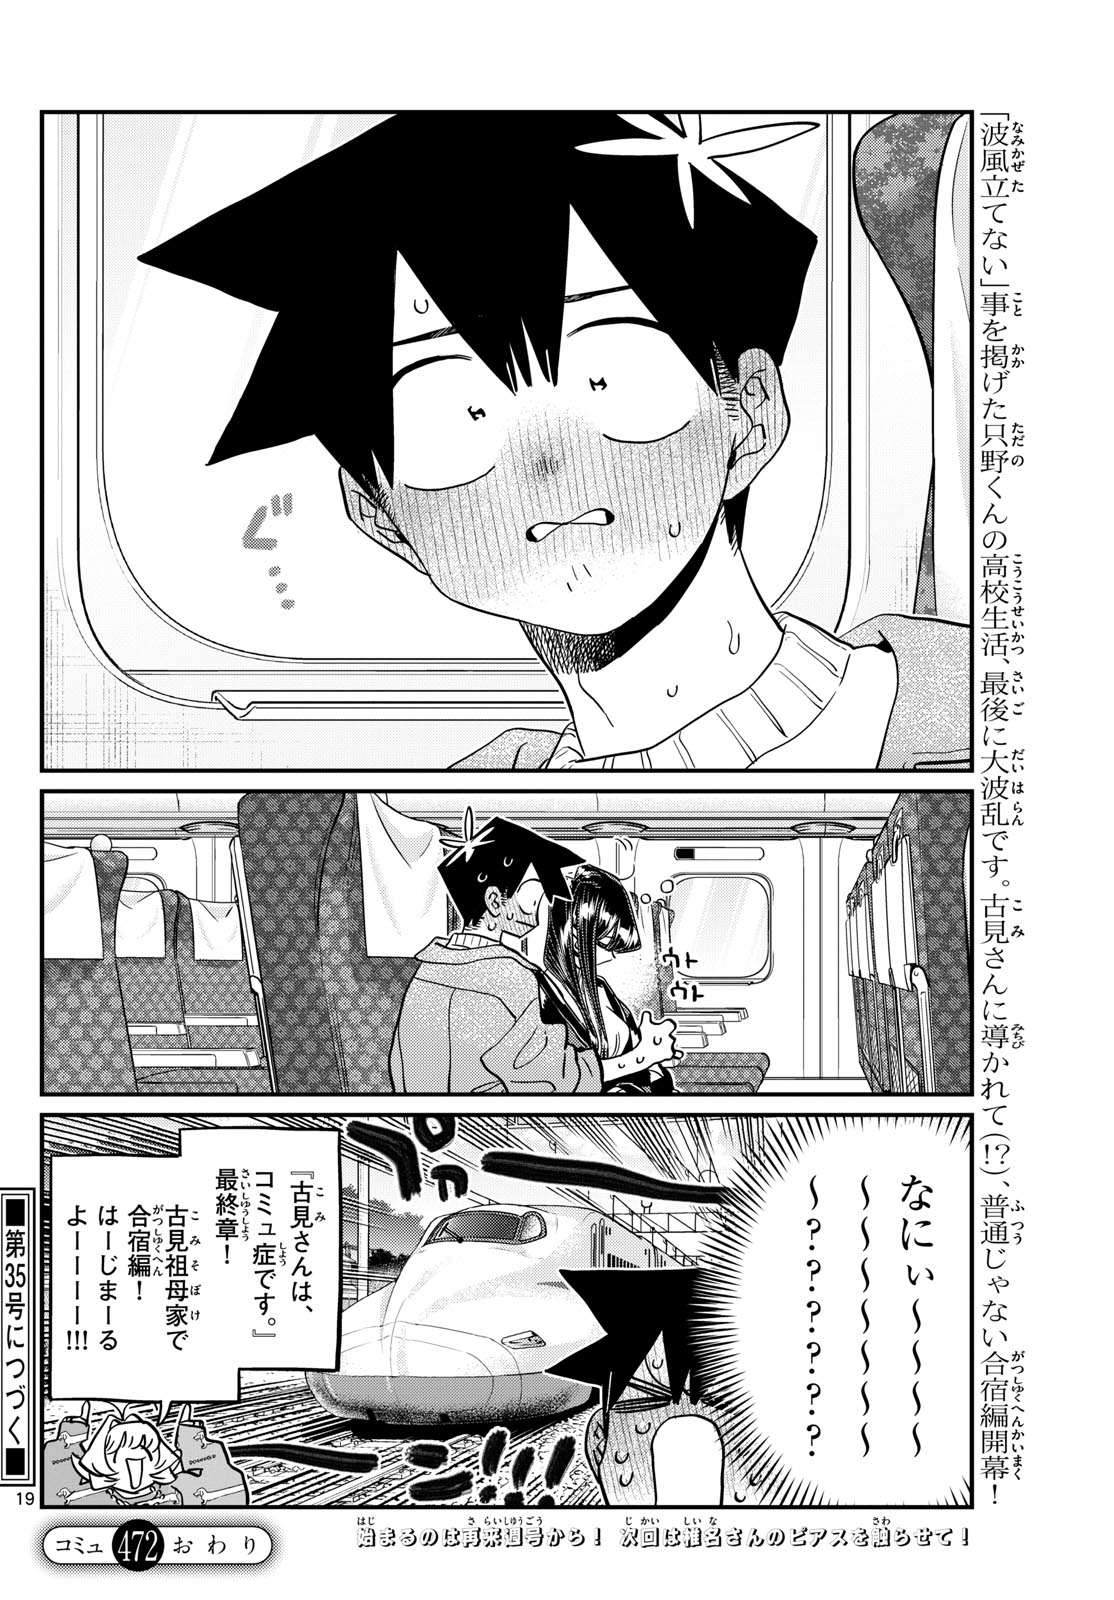 Komi-san wa Komyushou Desu - Chapter 472 - Page 19